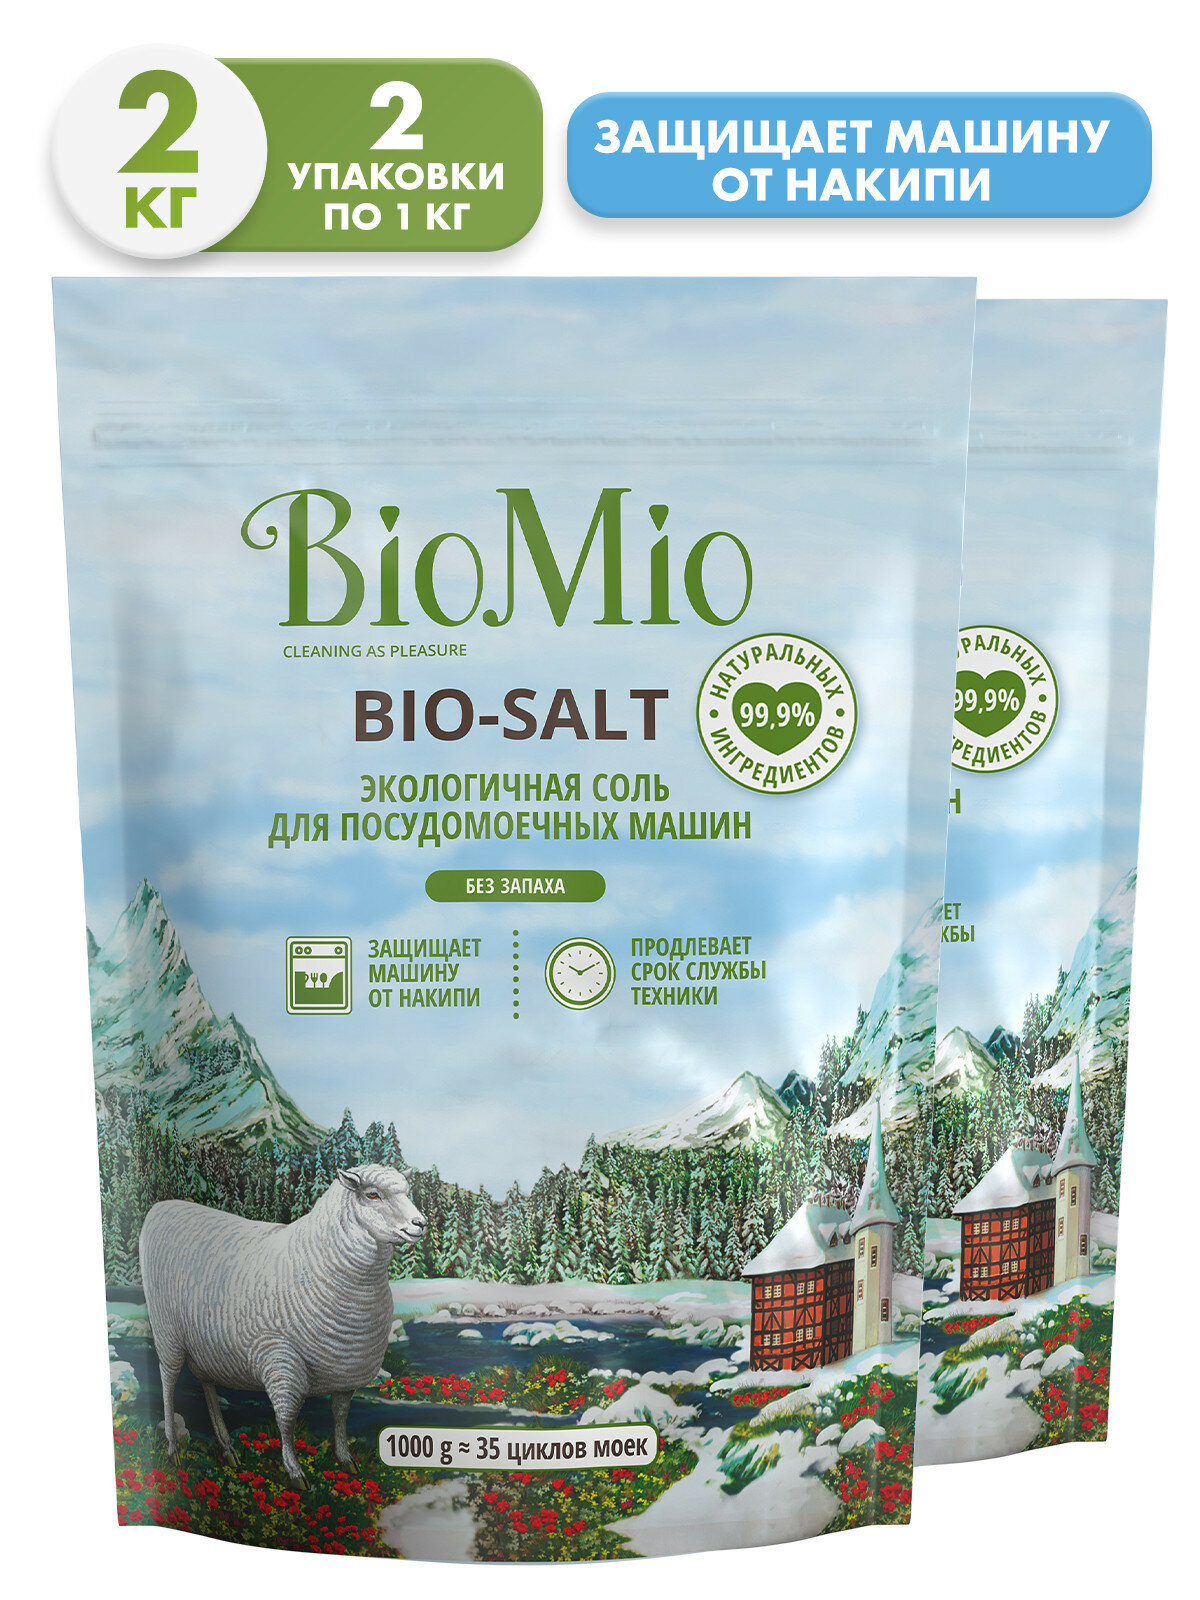 BioMio. BIO-SALT Экологичная соль для посудомоечных машин / BioMio. BIO-SALT Eco Dish Washer Salt. 1000 г, (2 шт)